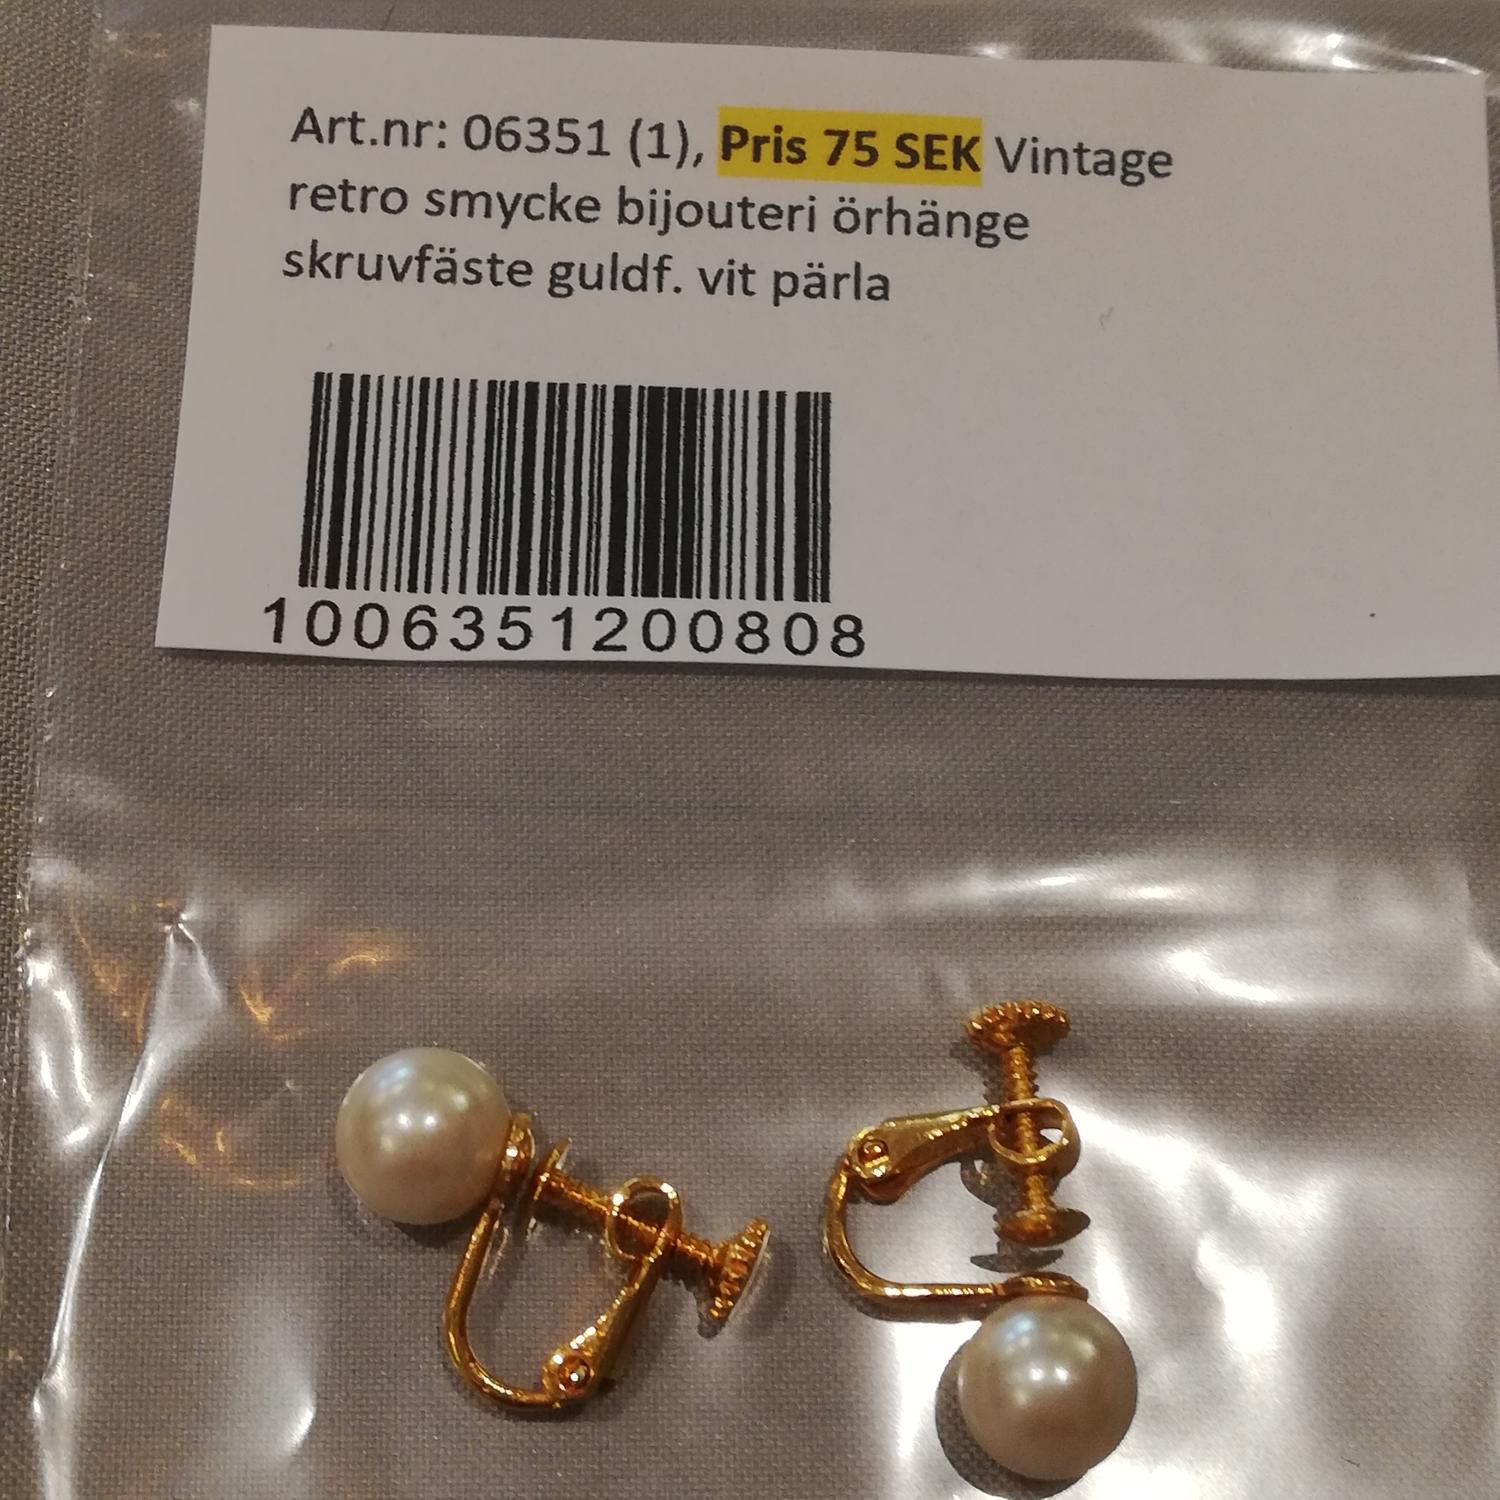 Vintage retro smycke bijouteri örhänge skruvfäste guldf. vit pärla